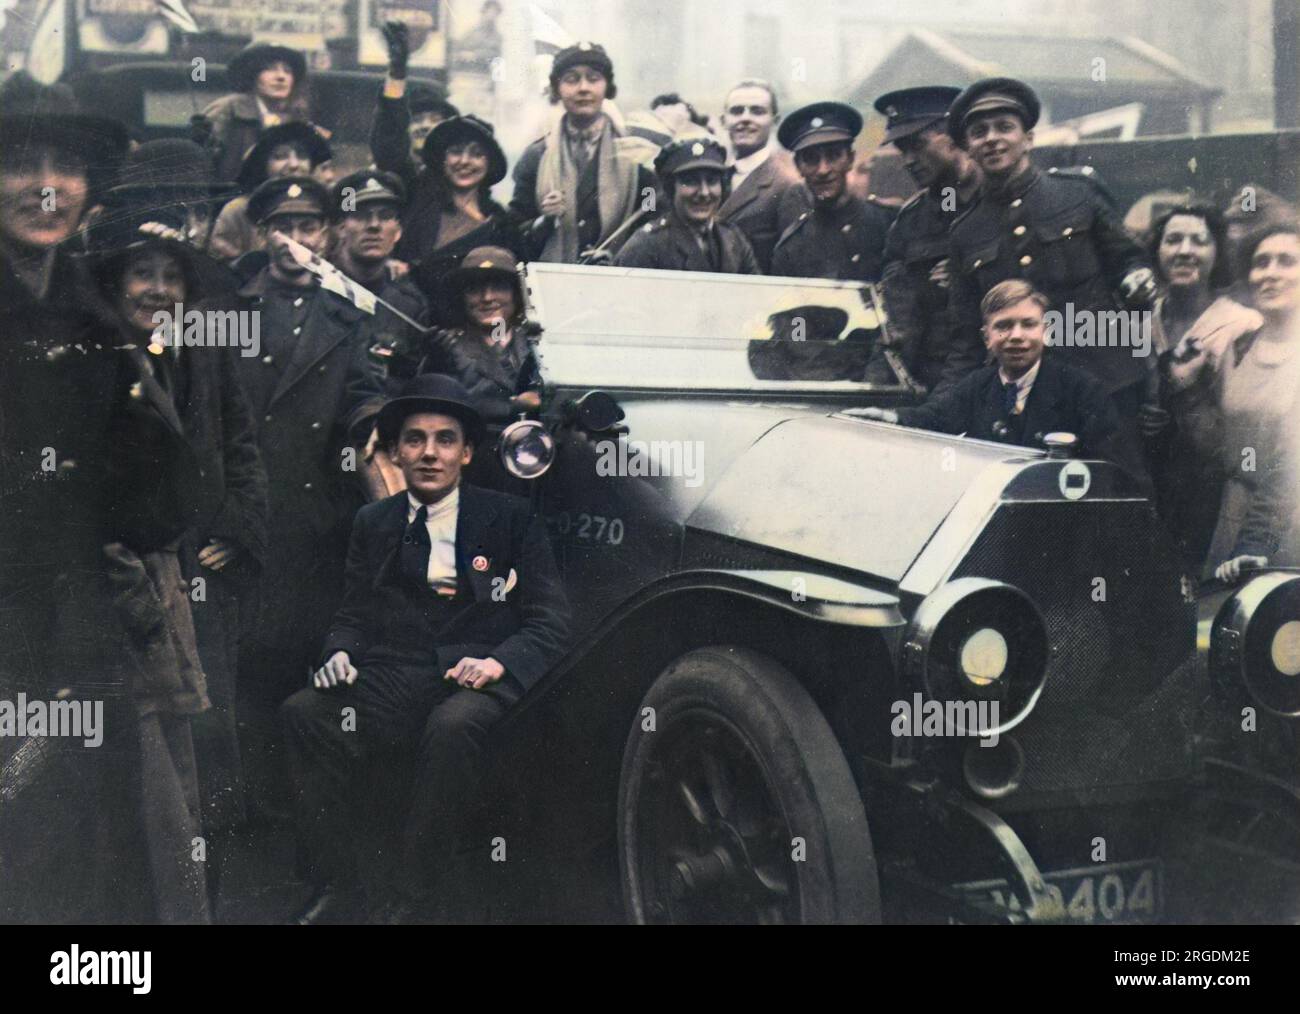 Eine glückliche Menschenmenge von Männern und Frauen, einige in Militäruniform, andere in Zivilisten, in London am Waffenstillstandstag, 11. November 1918, um ein Auto herum. Stockfoto